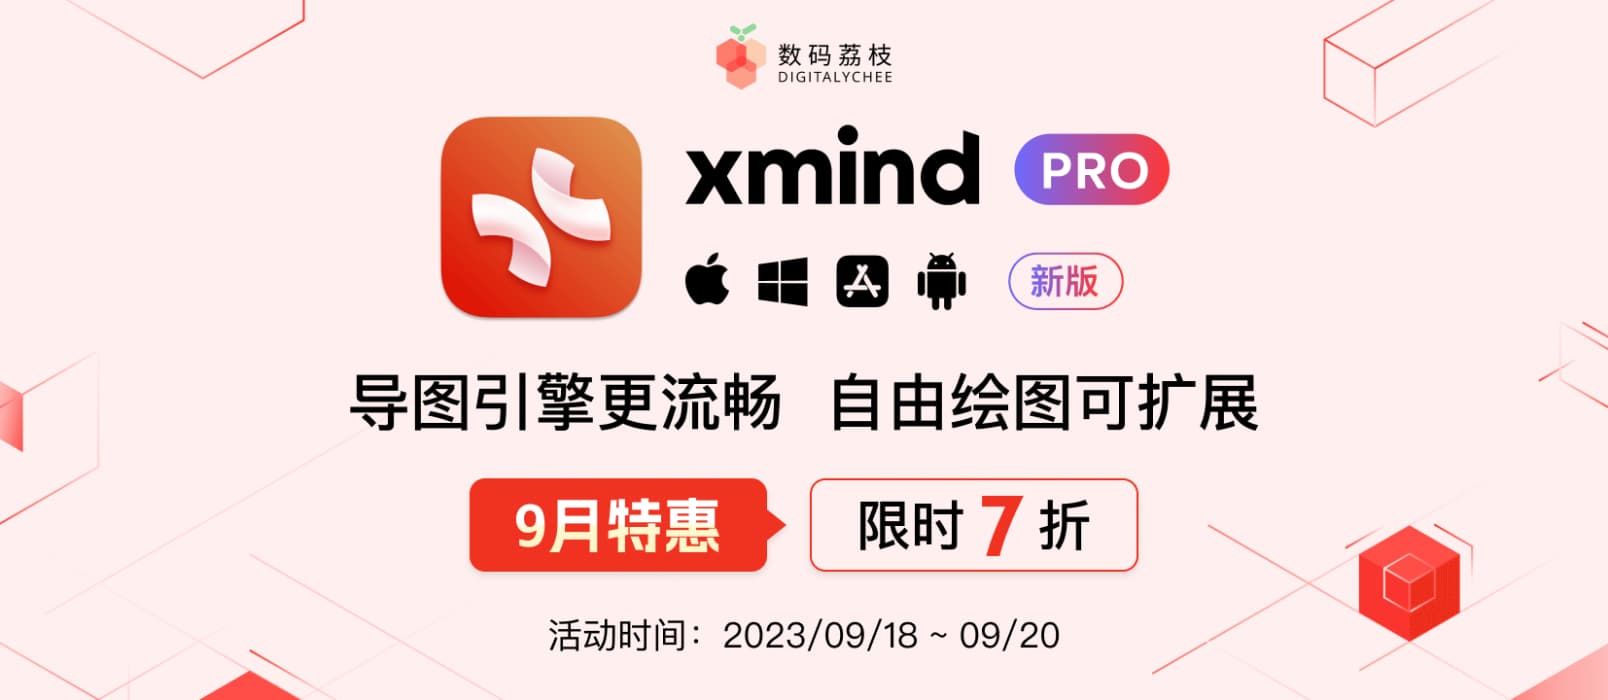 9 月特惠！Xmind Pro 2023 限时 7 折抢！ 8